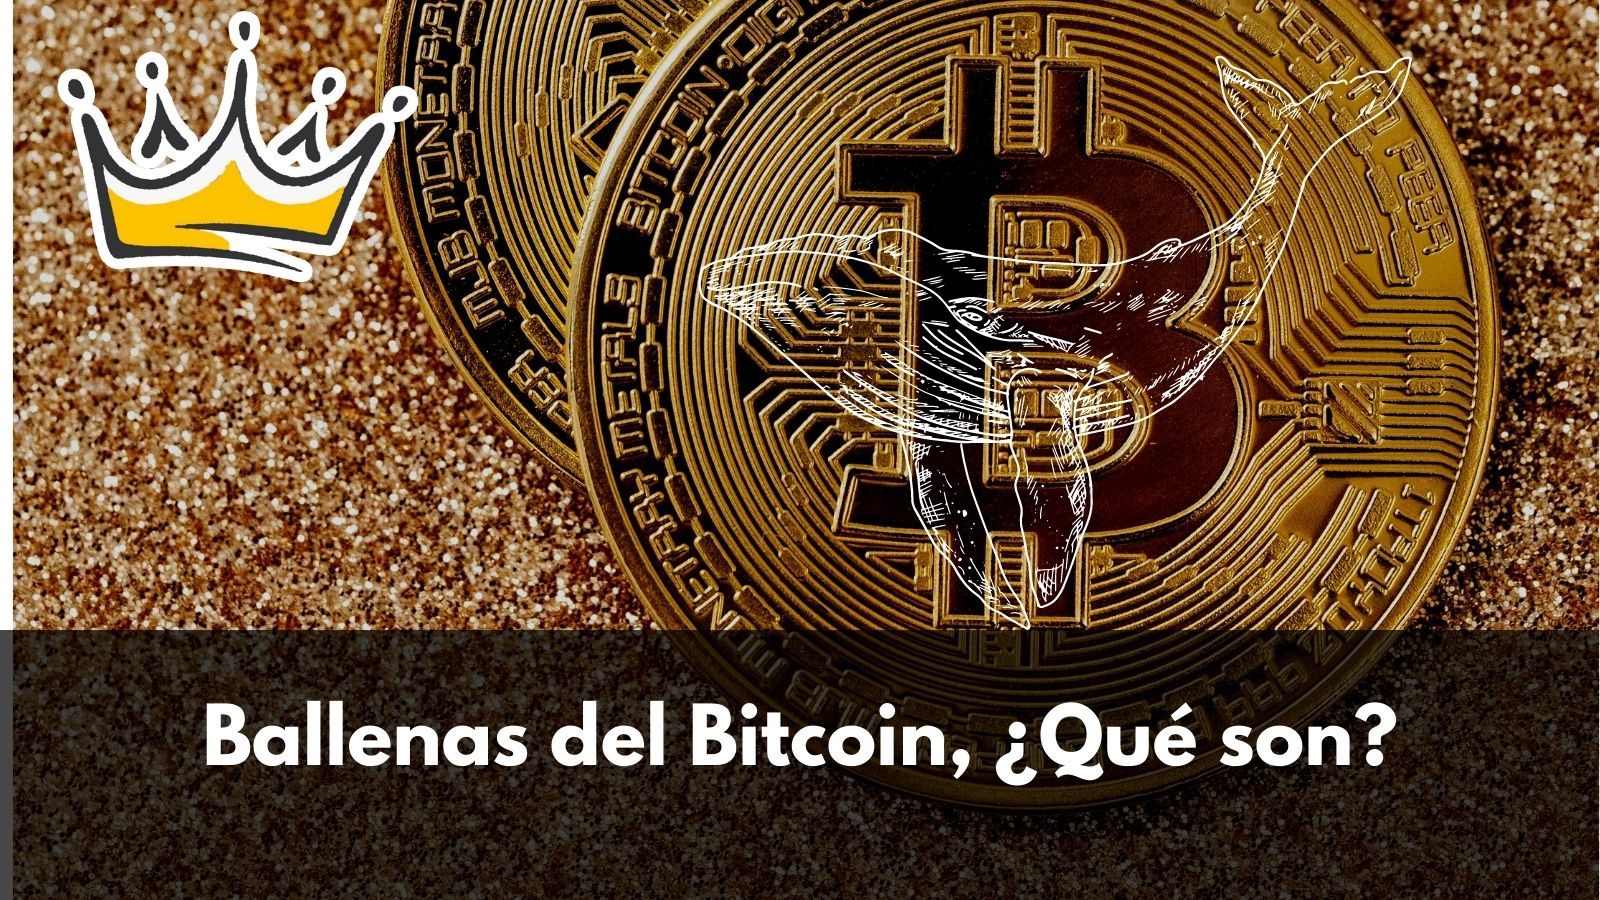 Ballenas del bitcoin